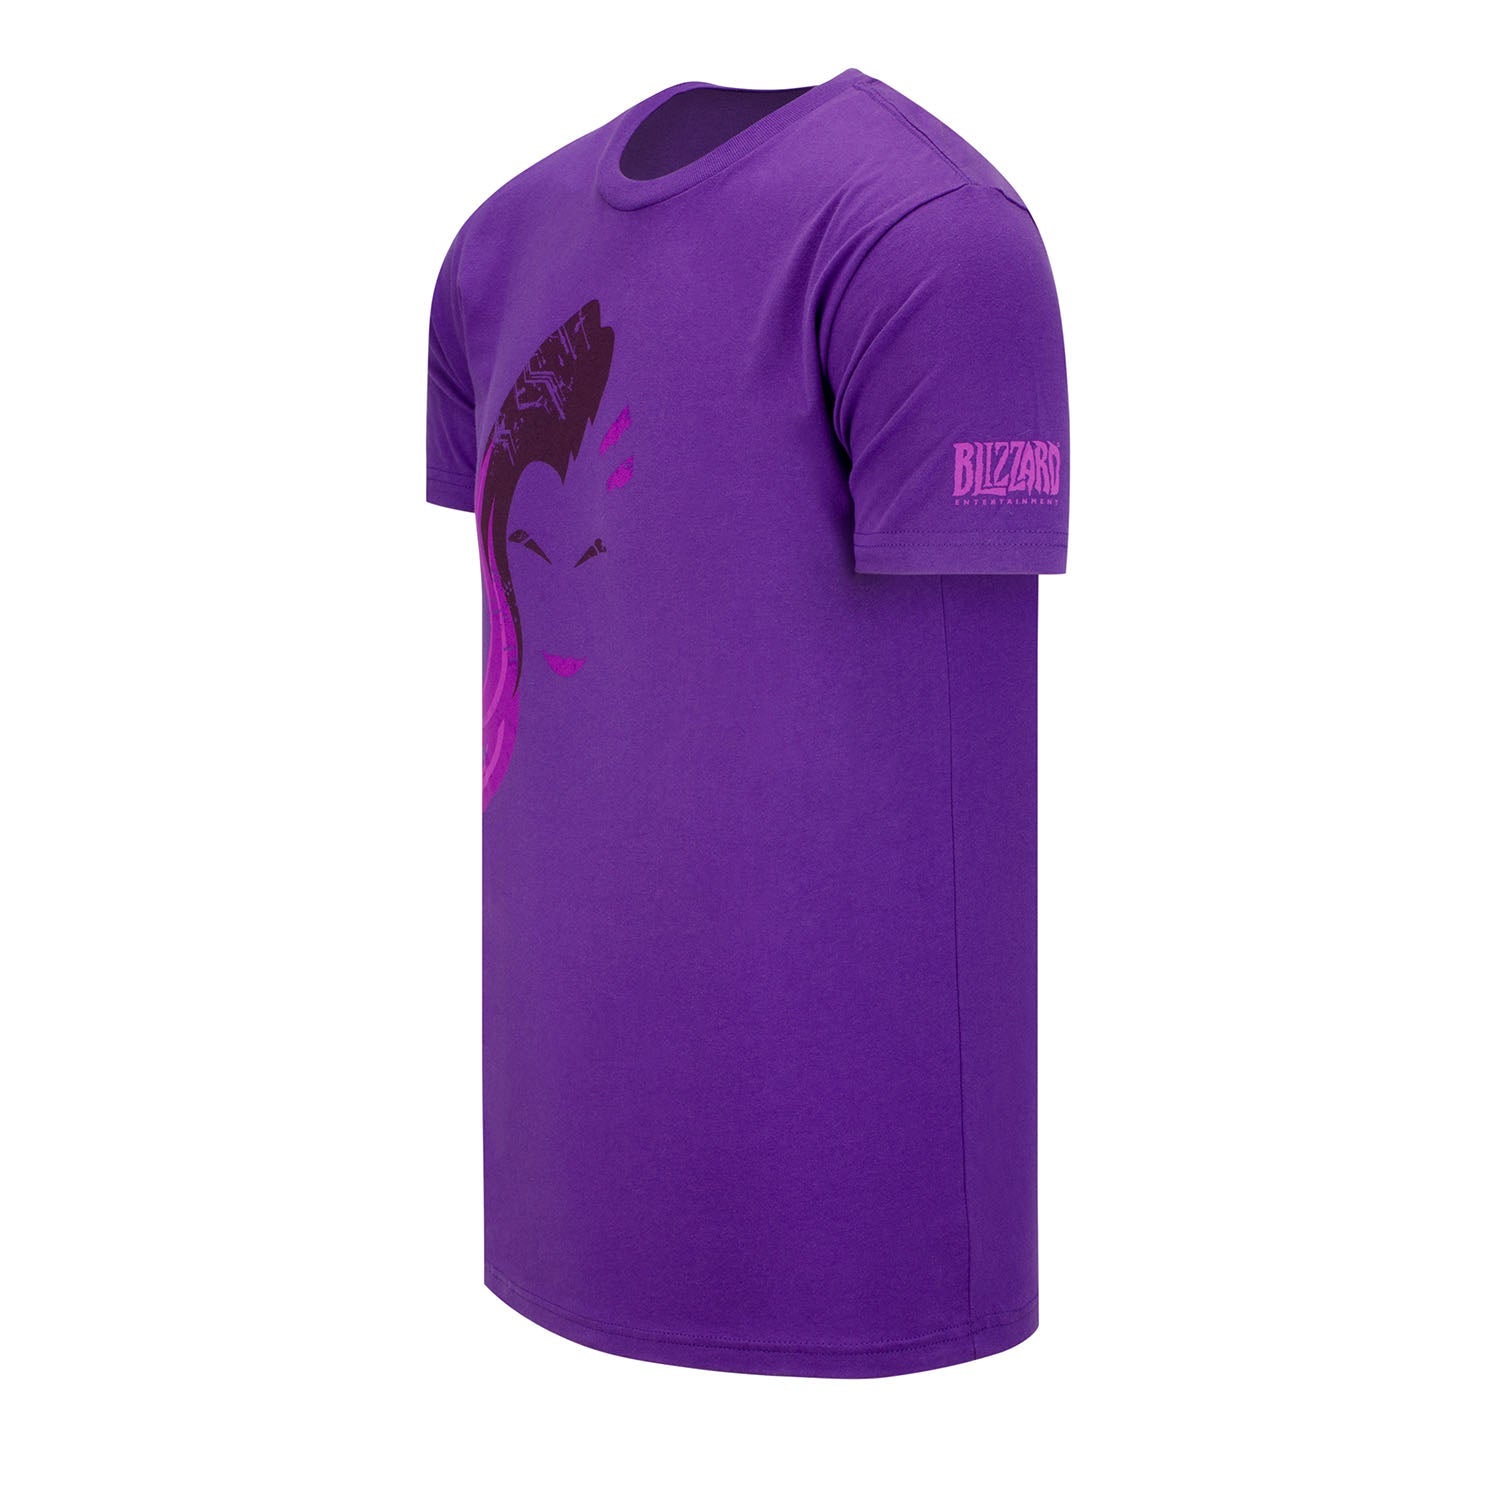 Overwatch Sombra Hero Purple T-Shirt - Left View